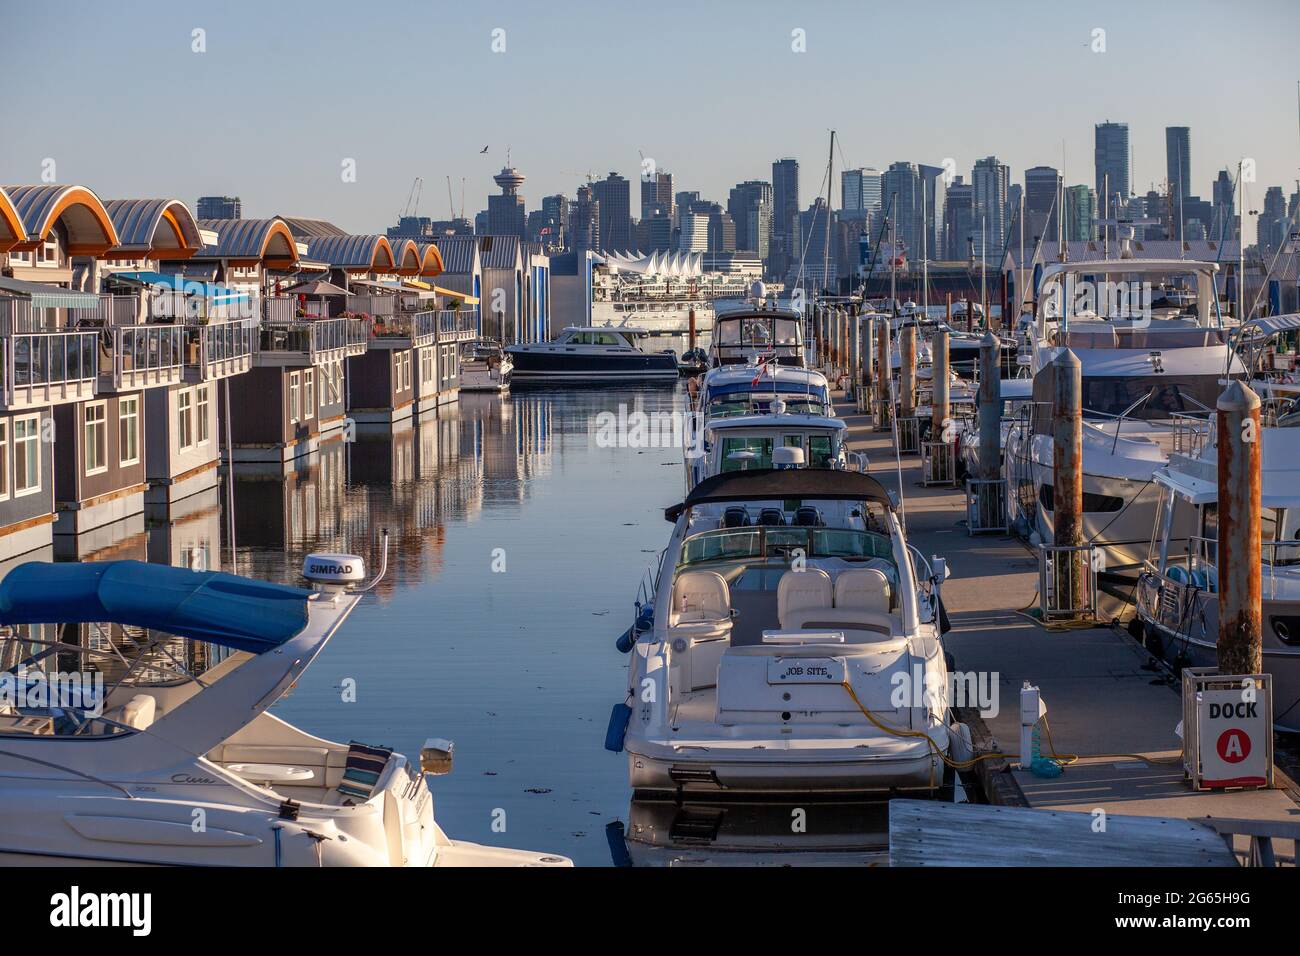 Des bateaux à moteur flottants colorés et mignons bordent les quais de la marina de Mosquito Creek, North Vancouver, Colombie-Britannique. Ce logement alternatif est en pleine croissance Banque D'Images